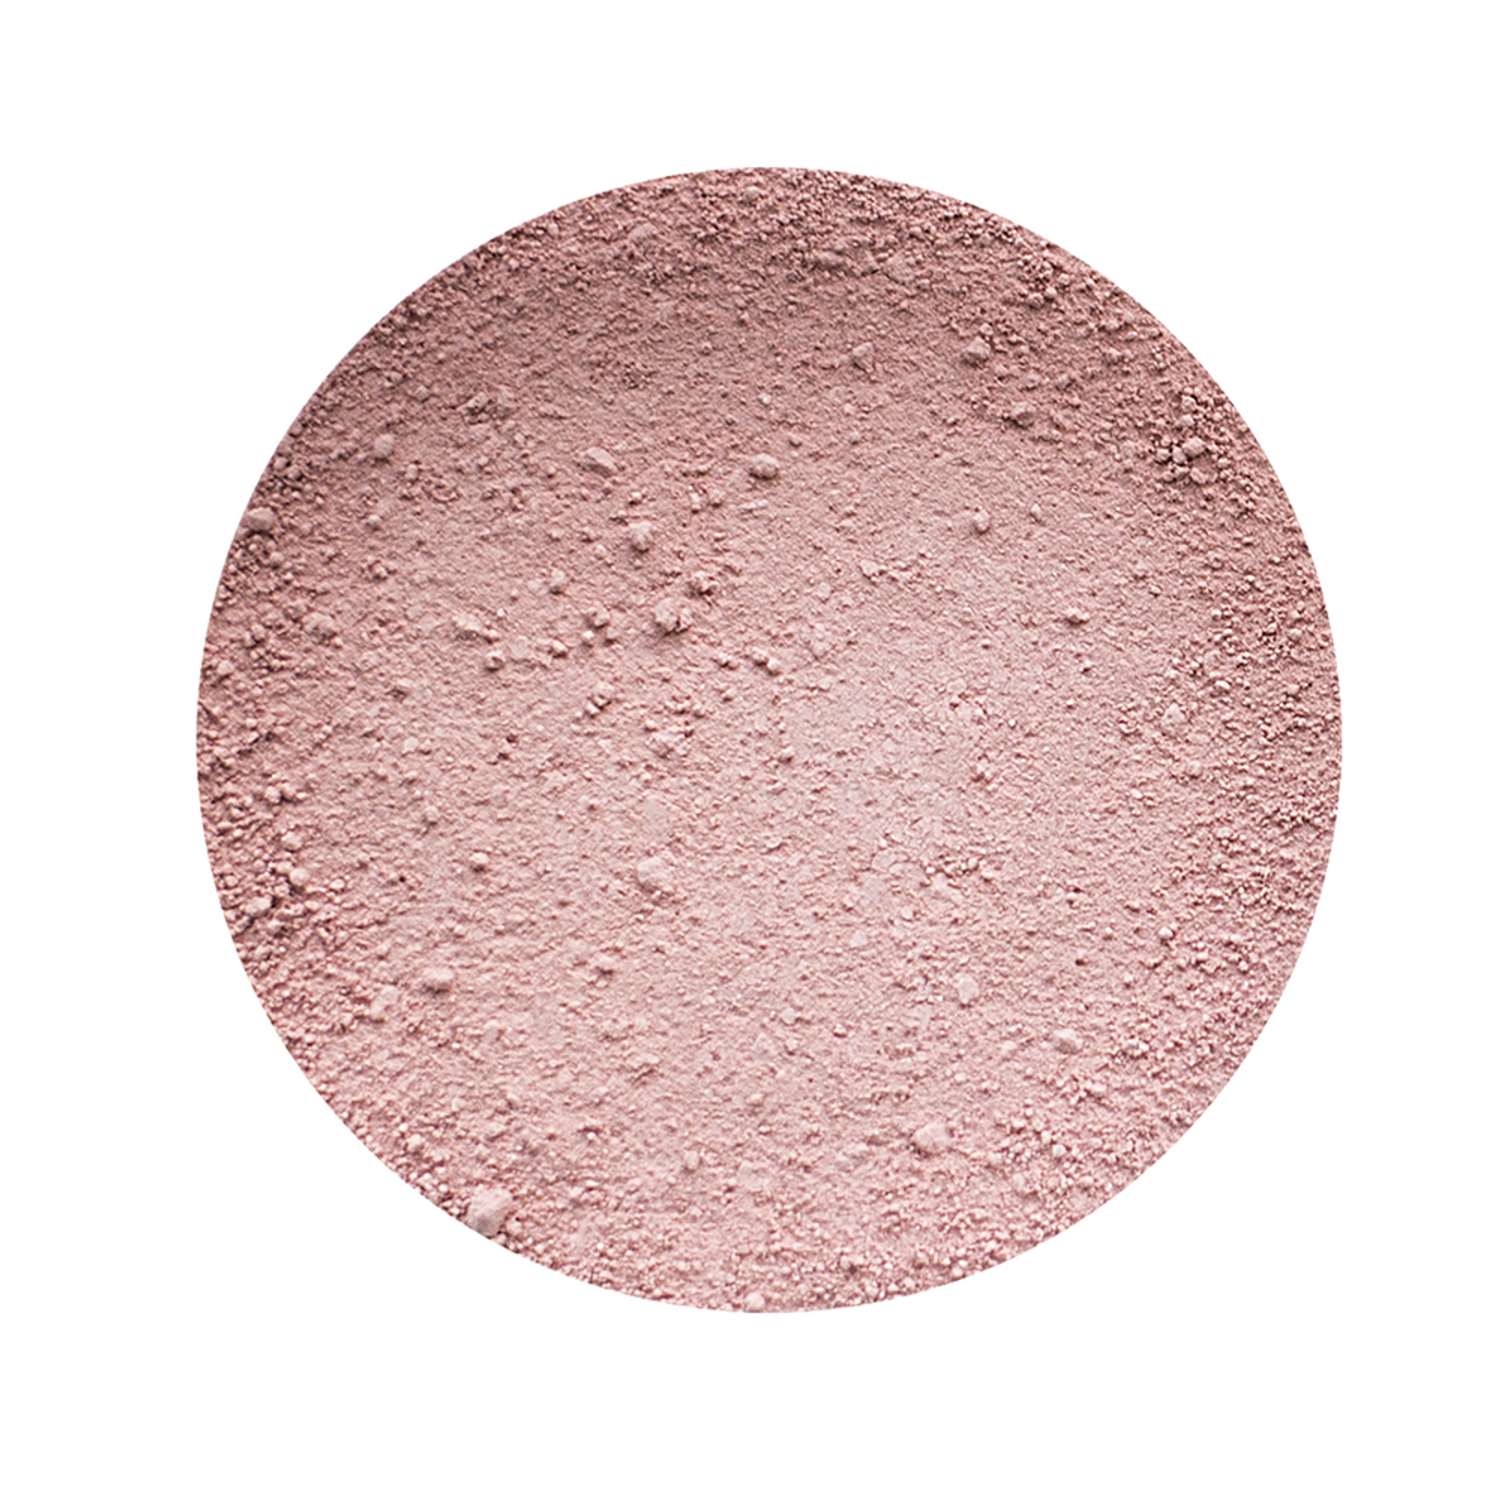 Румяна ChocoLatte Нежный поцелуй светло-розового оттенка 10 мл 3 гр - фото 3